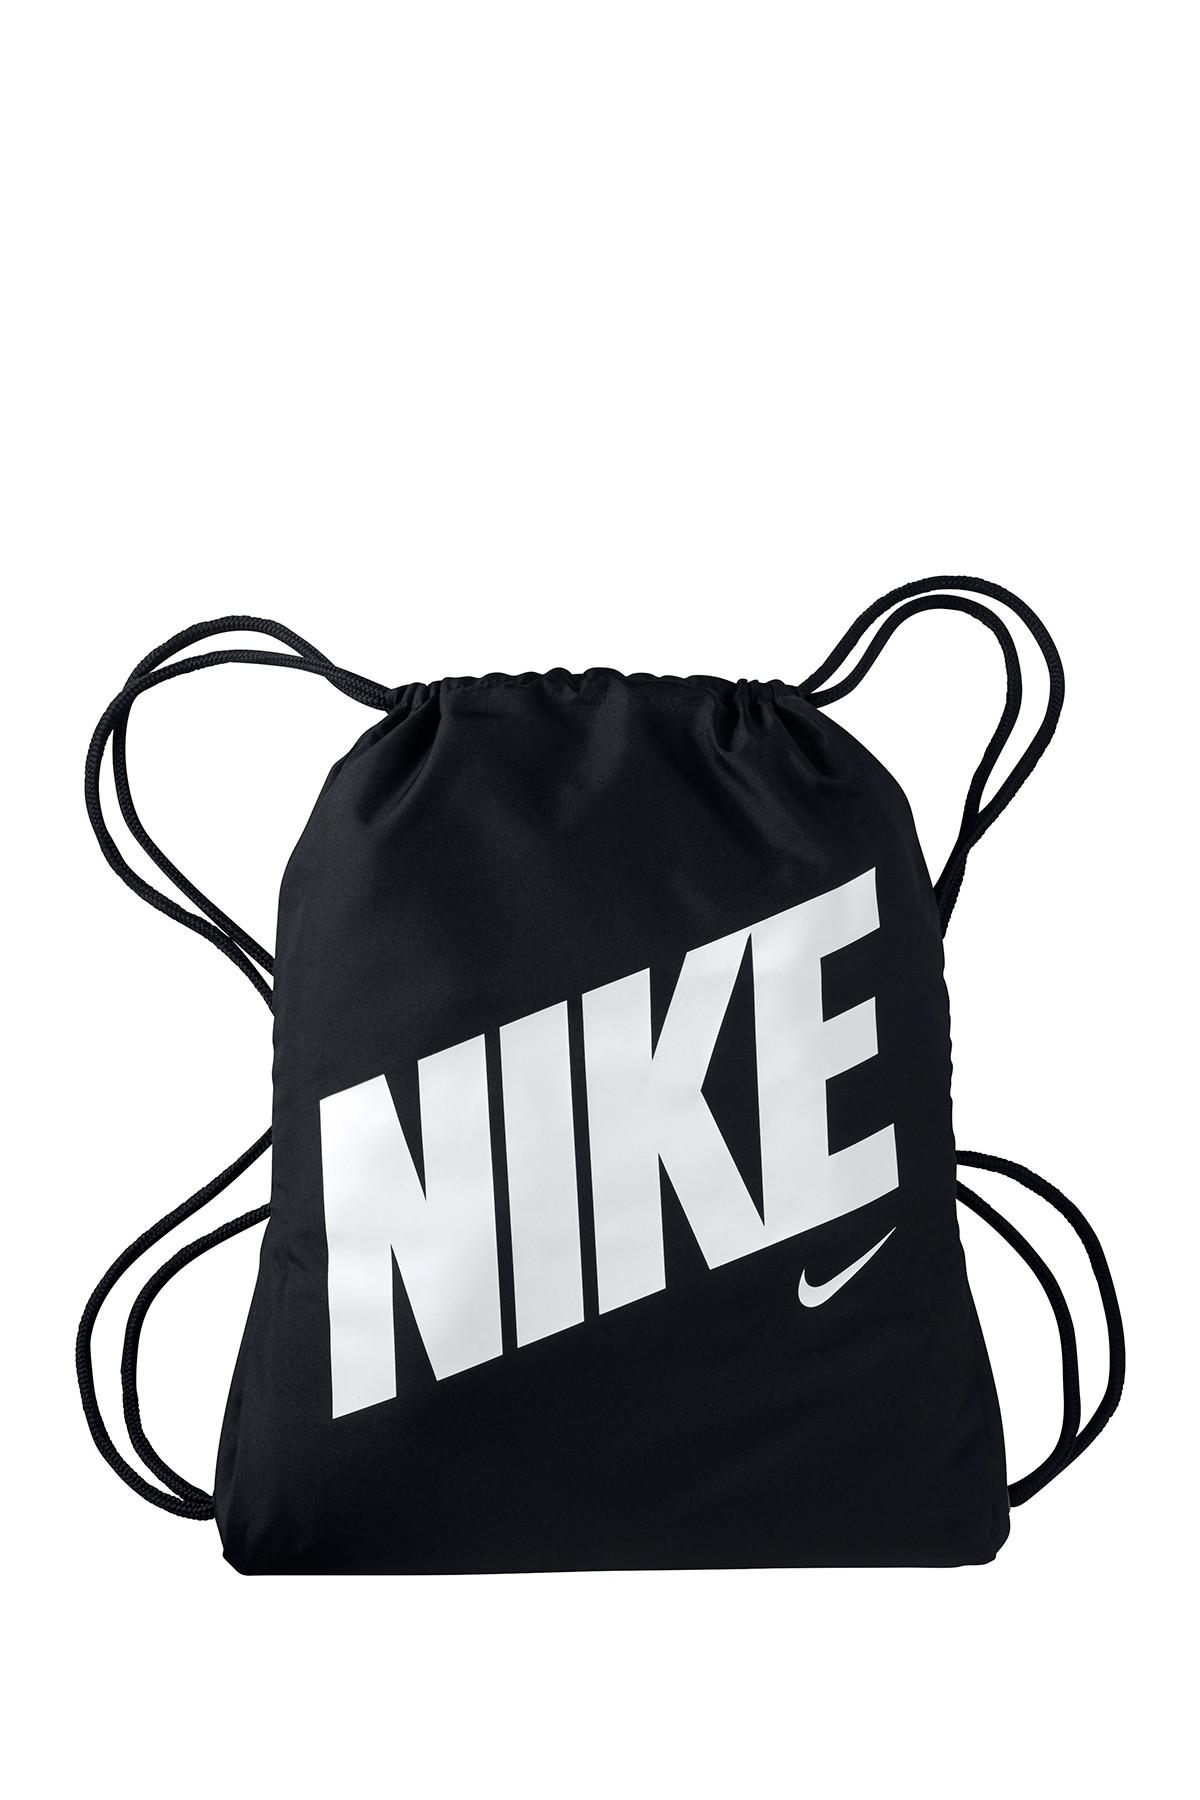 Nike Gymsak Drawstring Backpack in Black for Men - Lyst